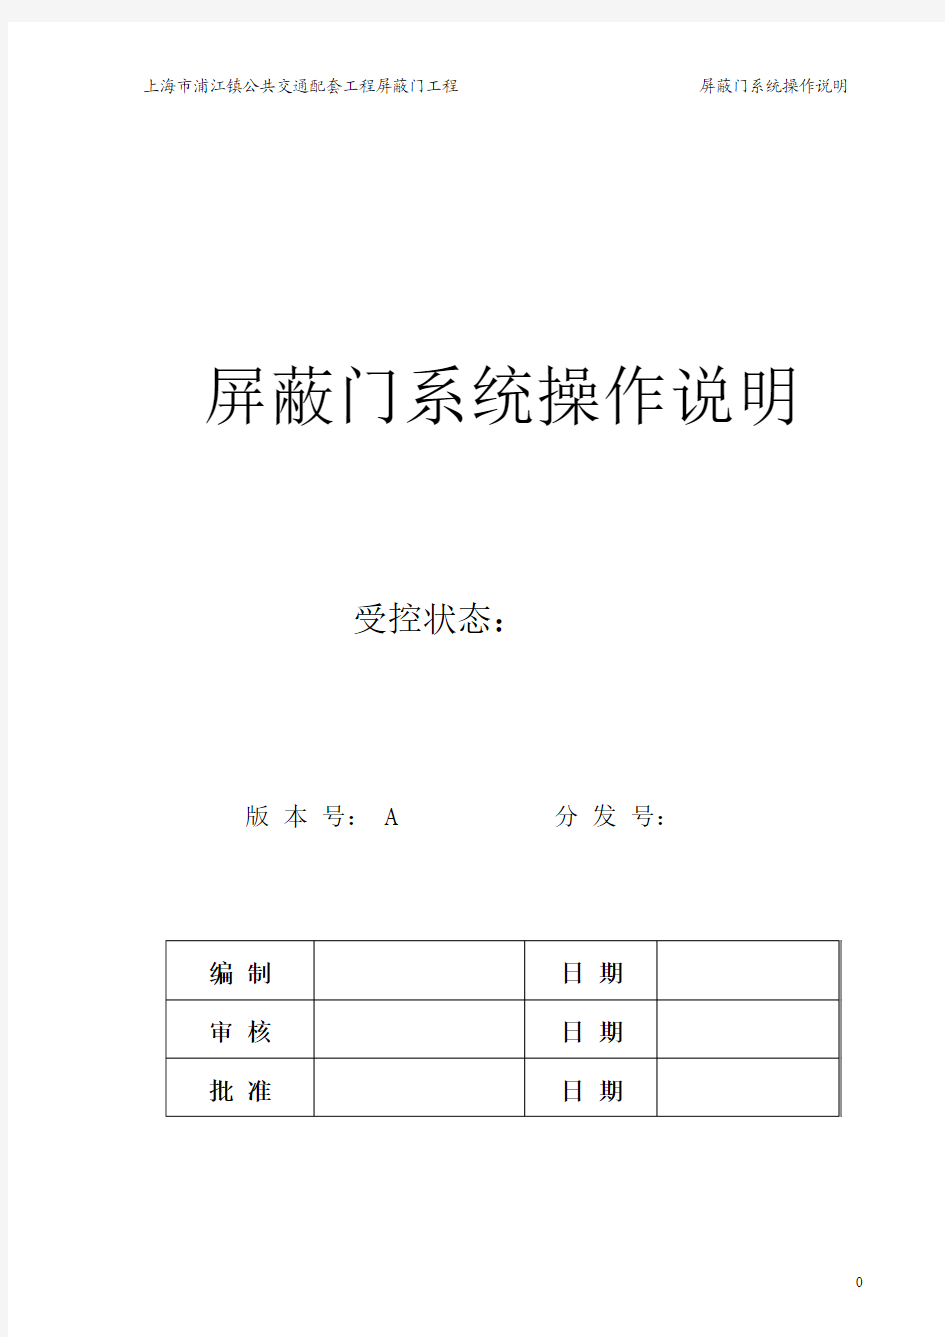 上海地铁8号线屏蔽门用户操作手册